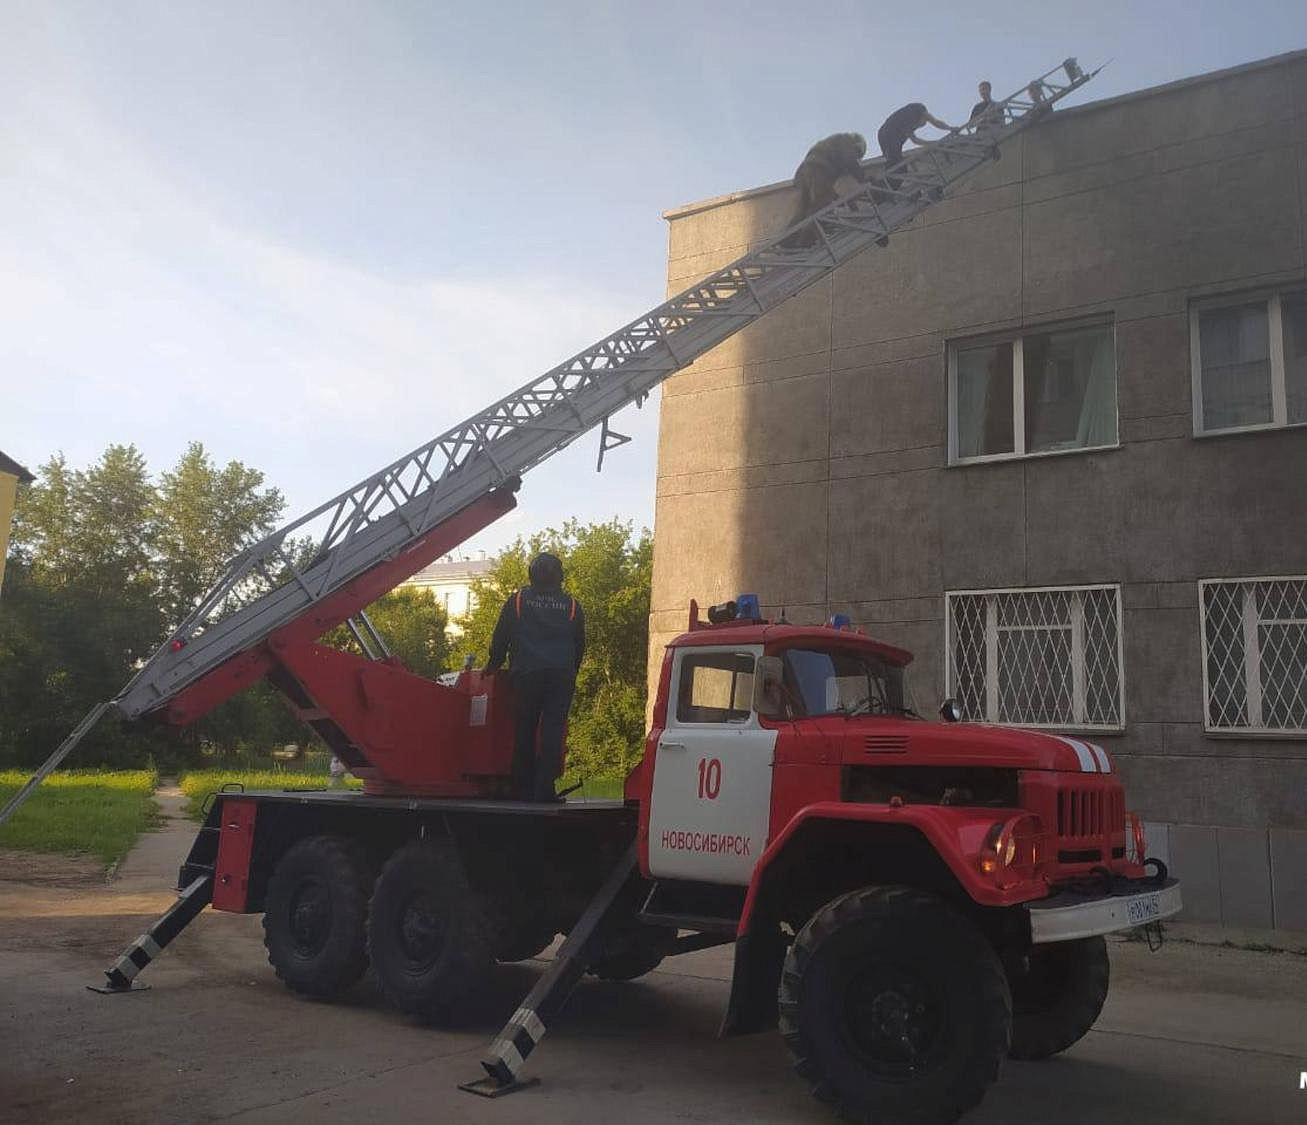 Троих подростков сняли с крыши здания в Новосибирске